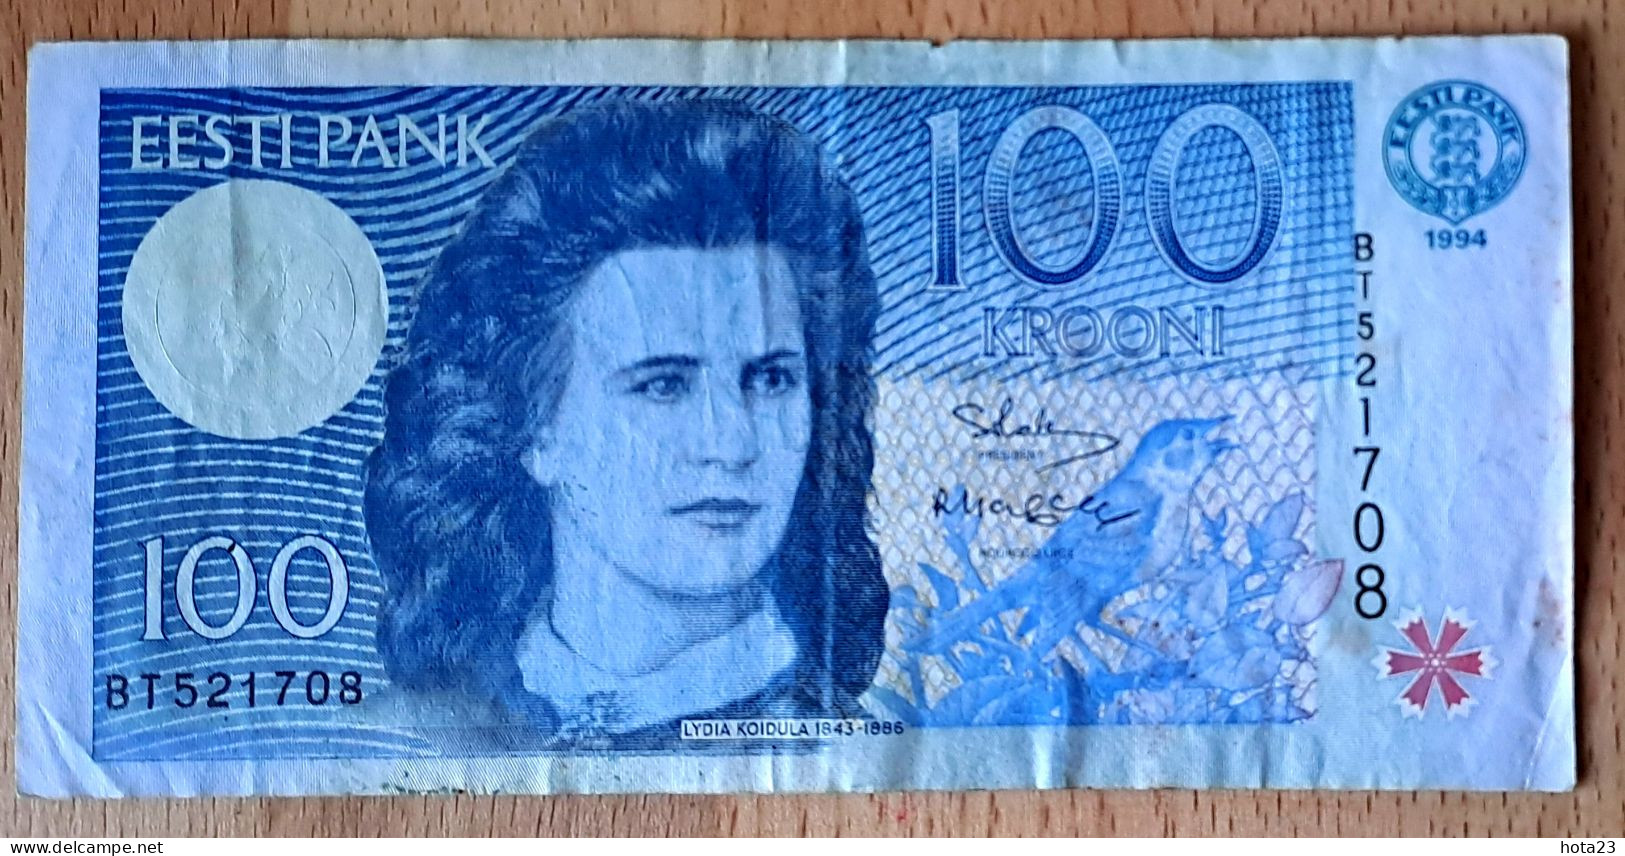 (!)  1994 ESTONIA , Estland  100 KROONI P79  EURO CUCKOO BIRD Circulated - Estonie